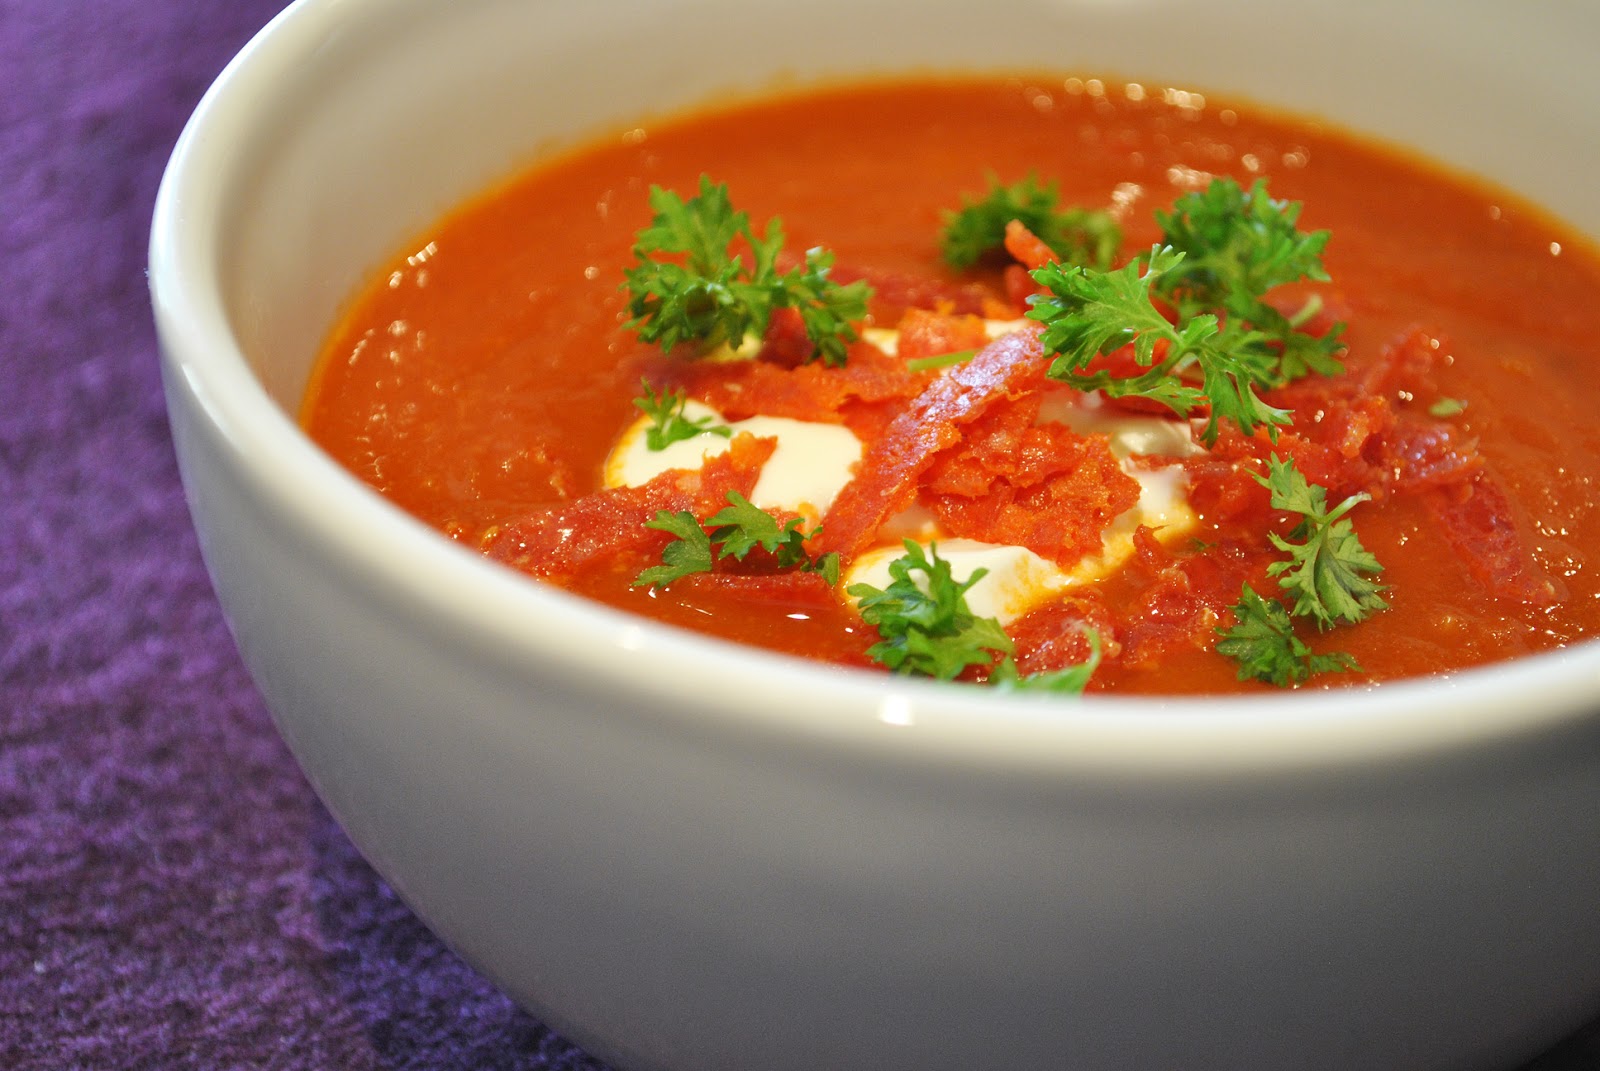 Pikante Tomaten Paprika Suppe Mit Einlage — Rezepte Suchen